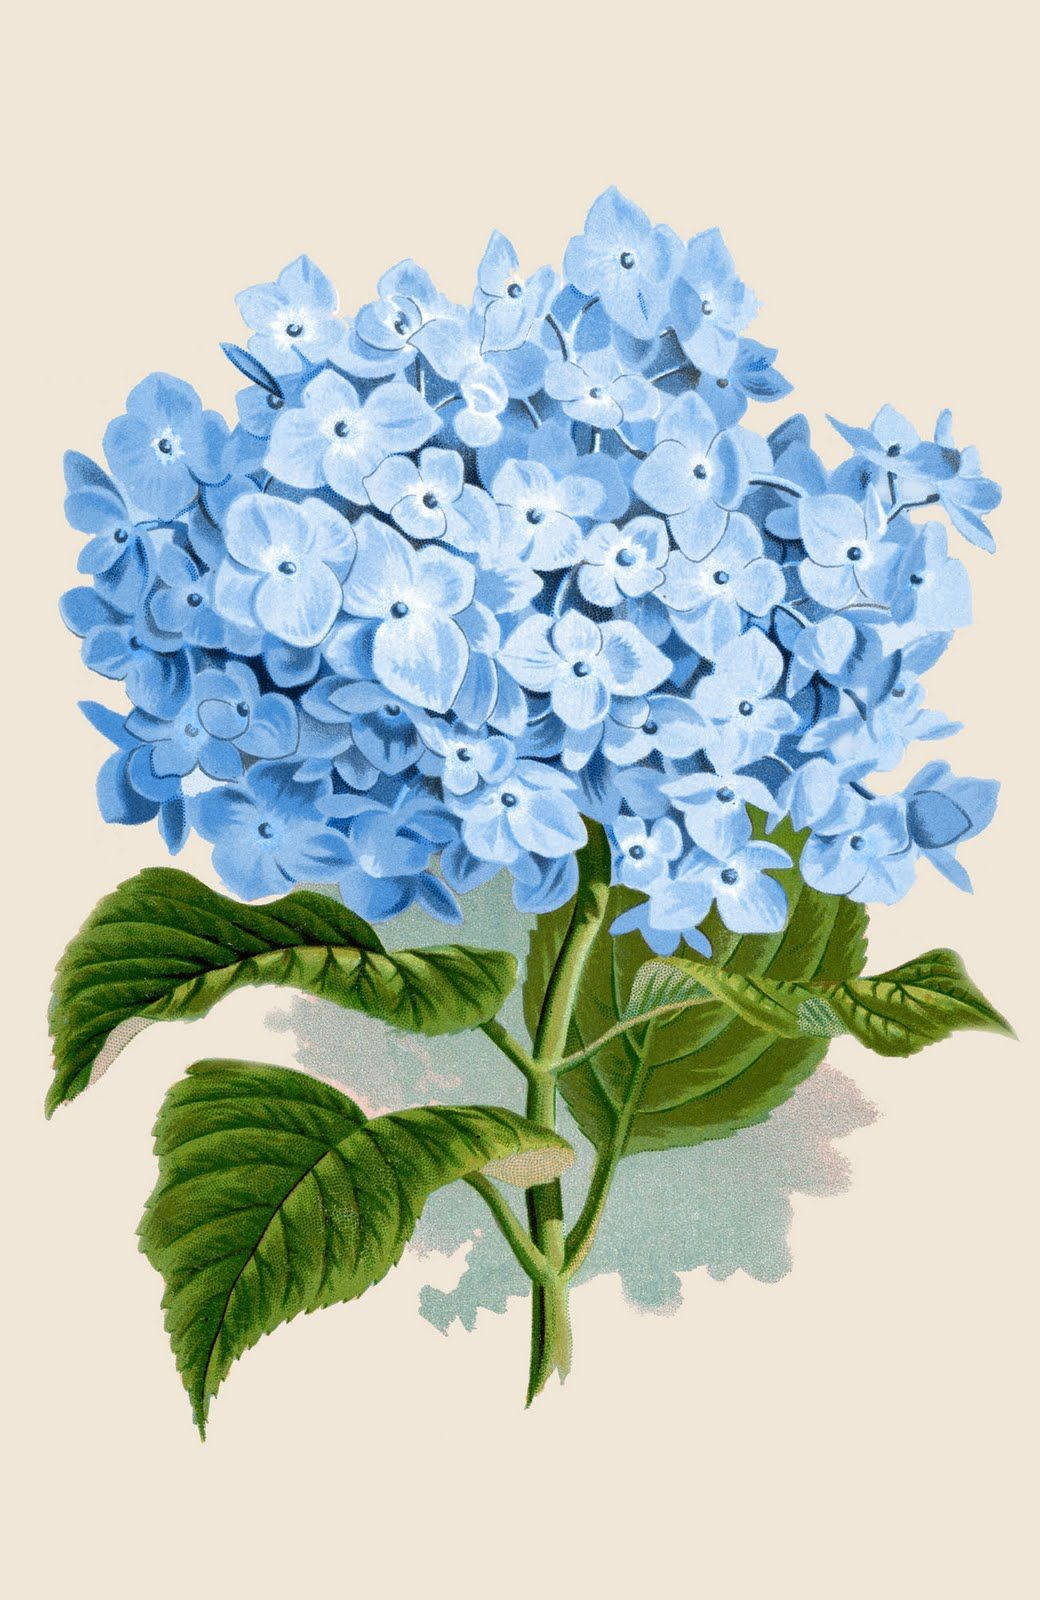 Vibrant Blue Hydrangea Illustration Wallpaper